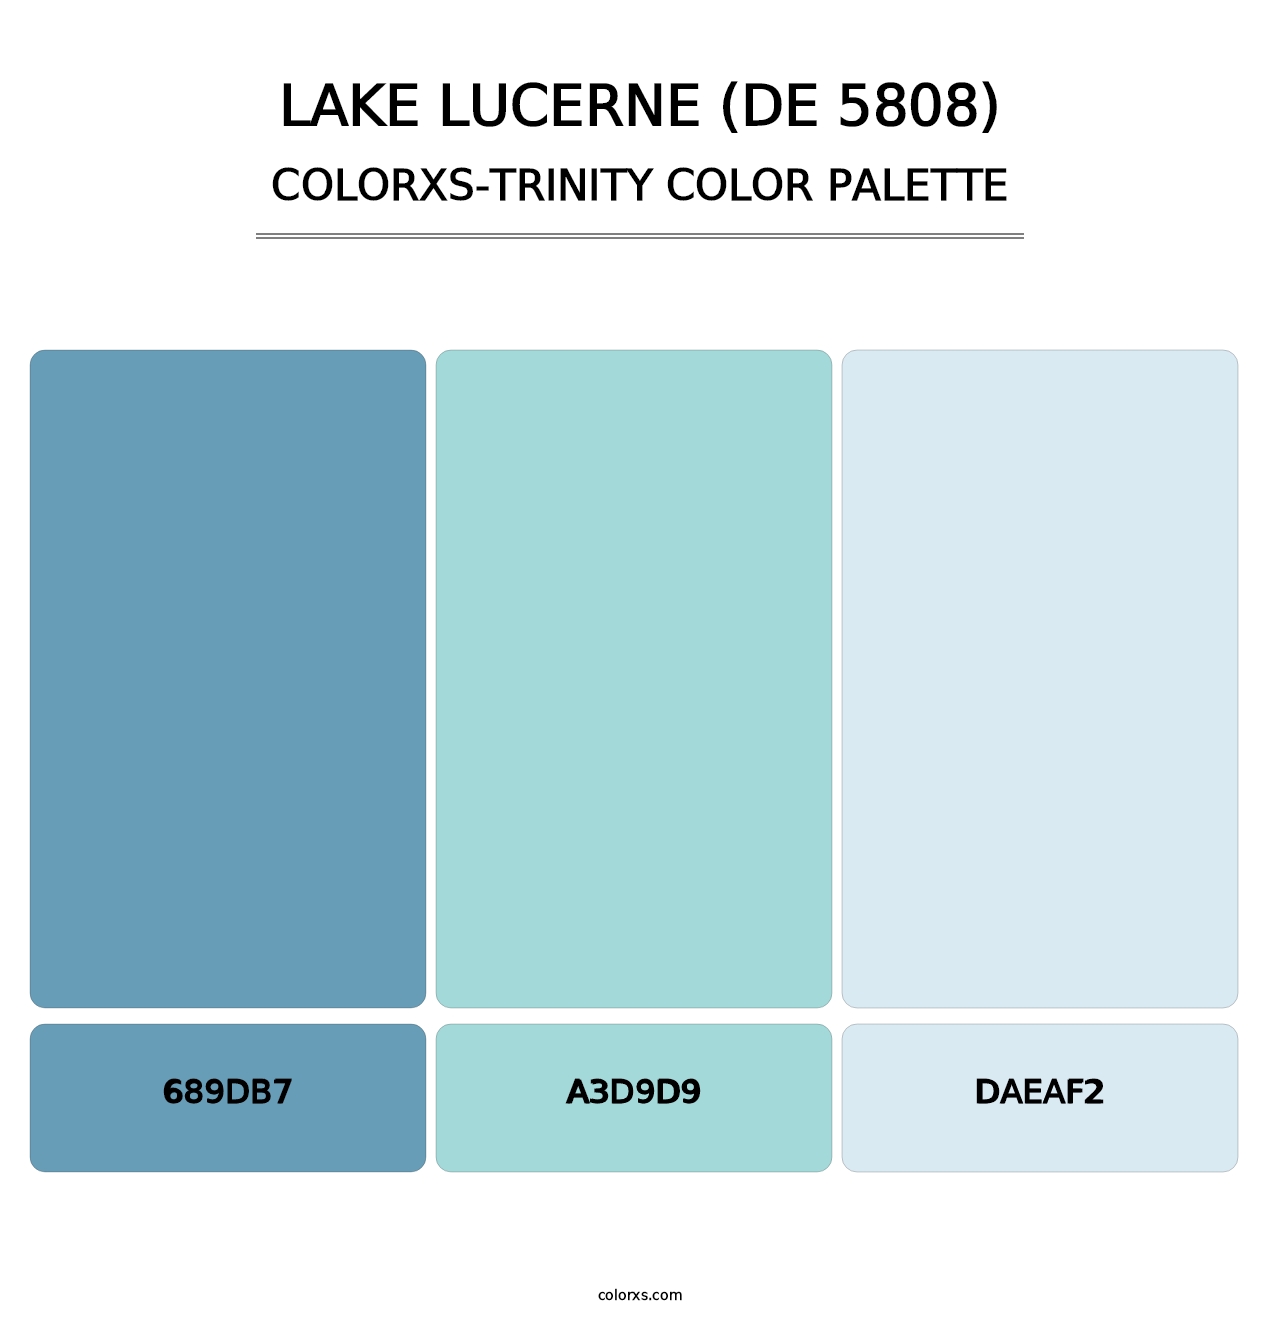 Lake Lucerne (DE 5808) - Colorxs Trinity Palette